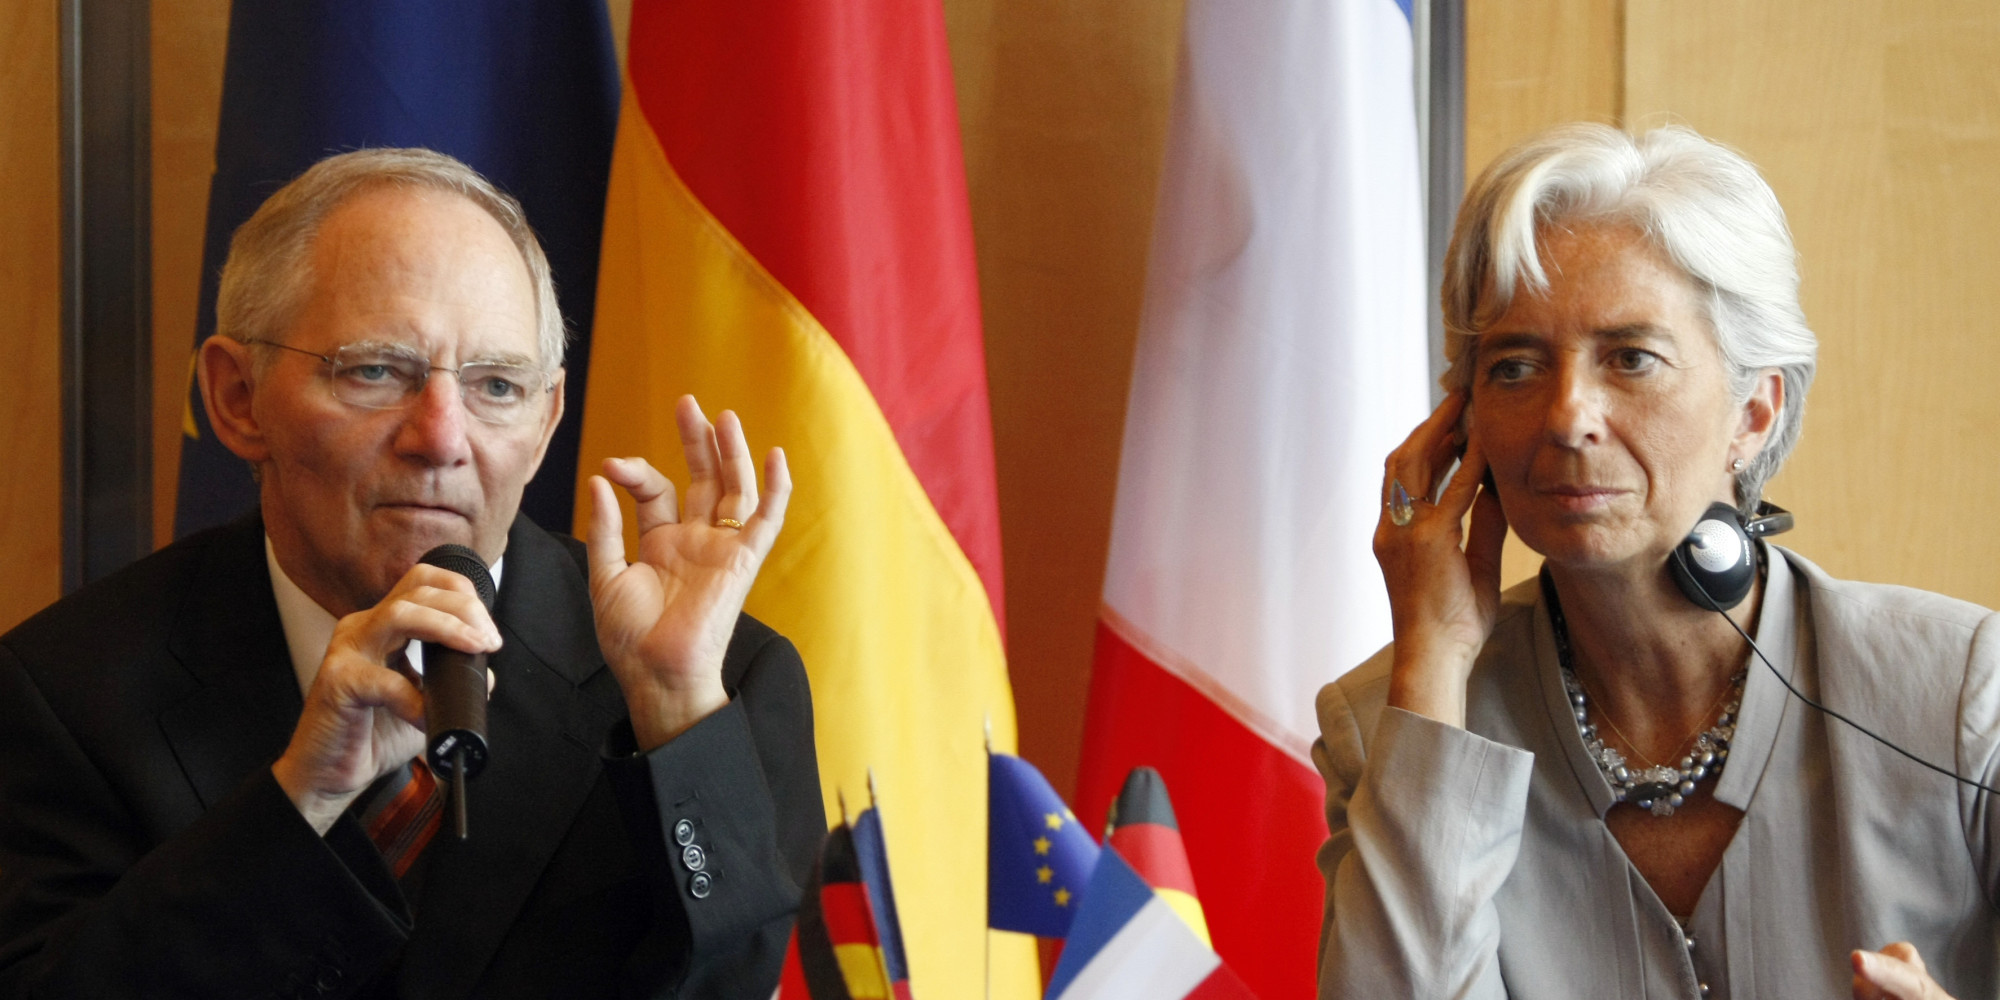 Ζητείται «σιωπηλή συμφωνία» μεταξύ Ευρώπης και ΔΝΤ